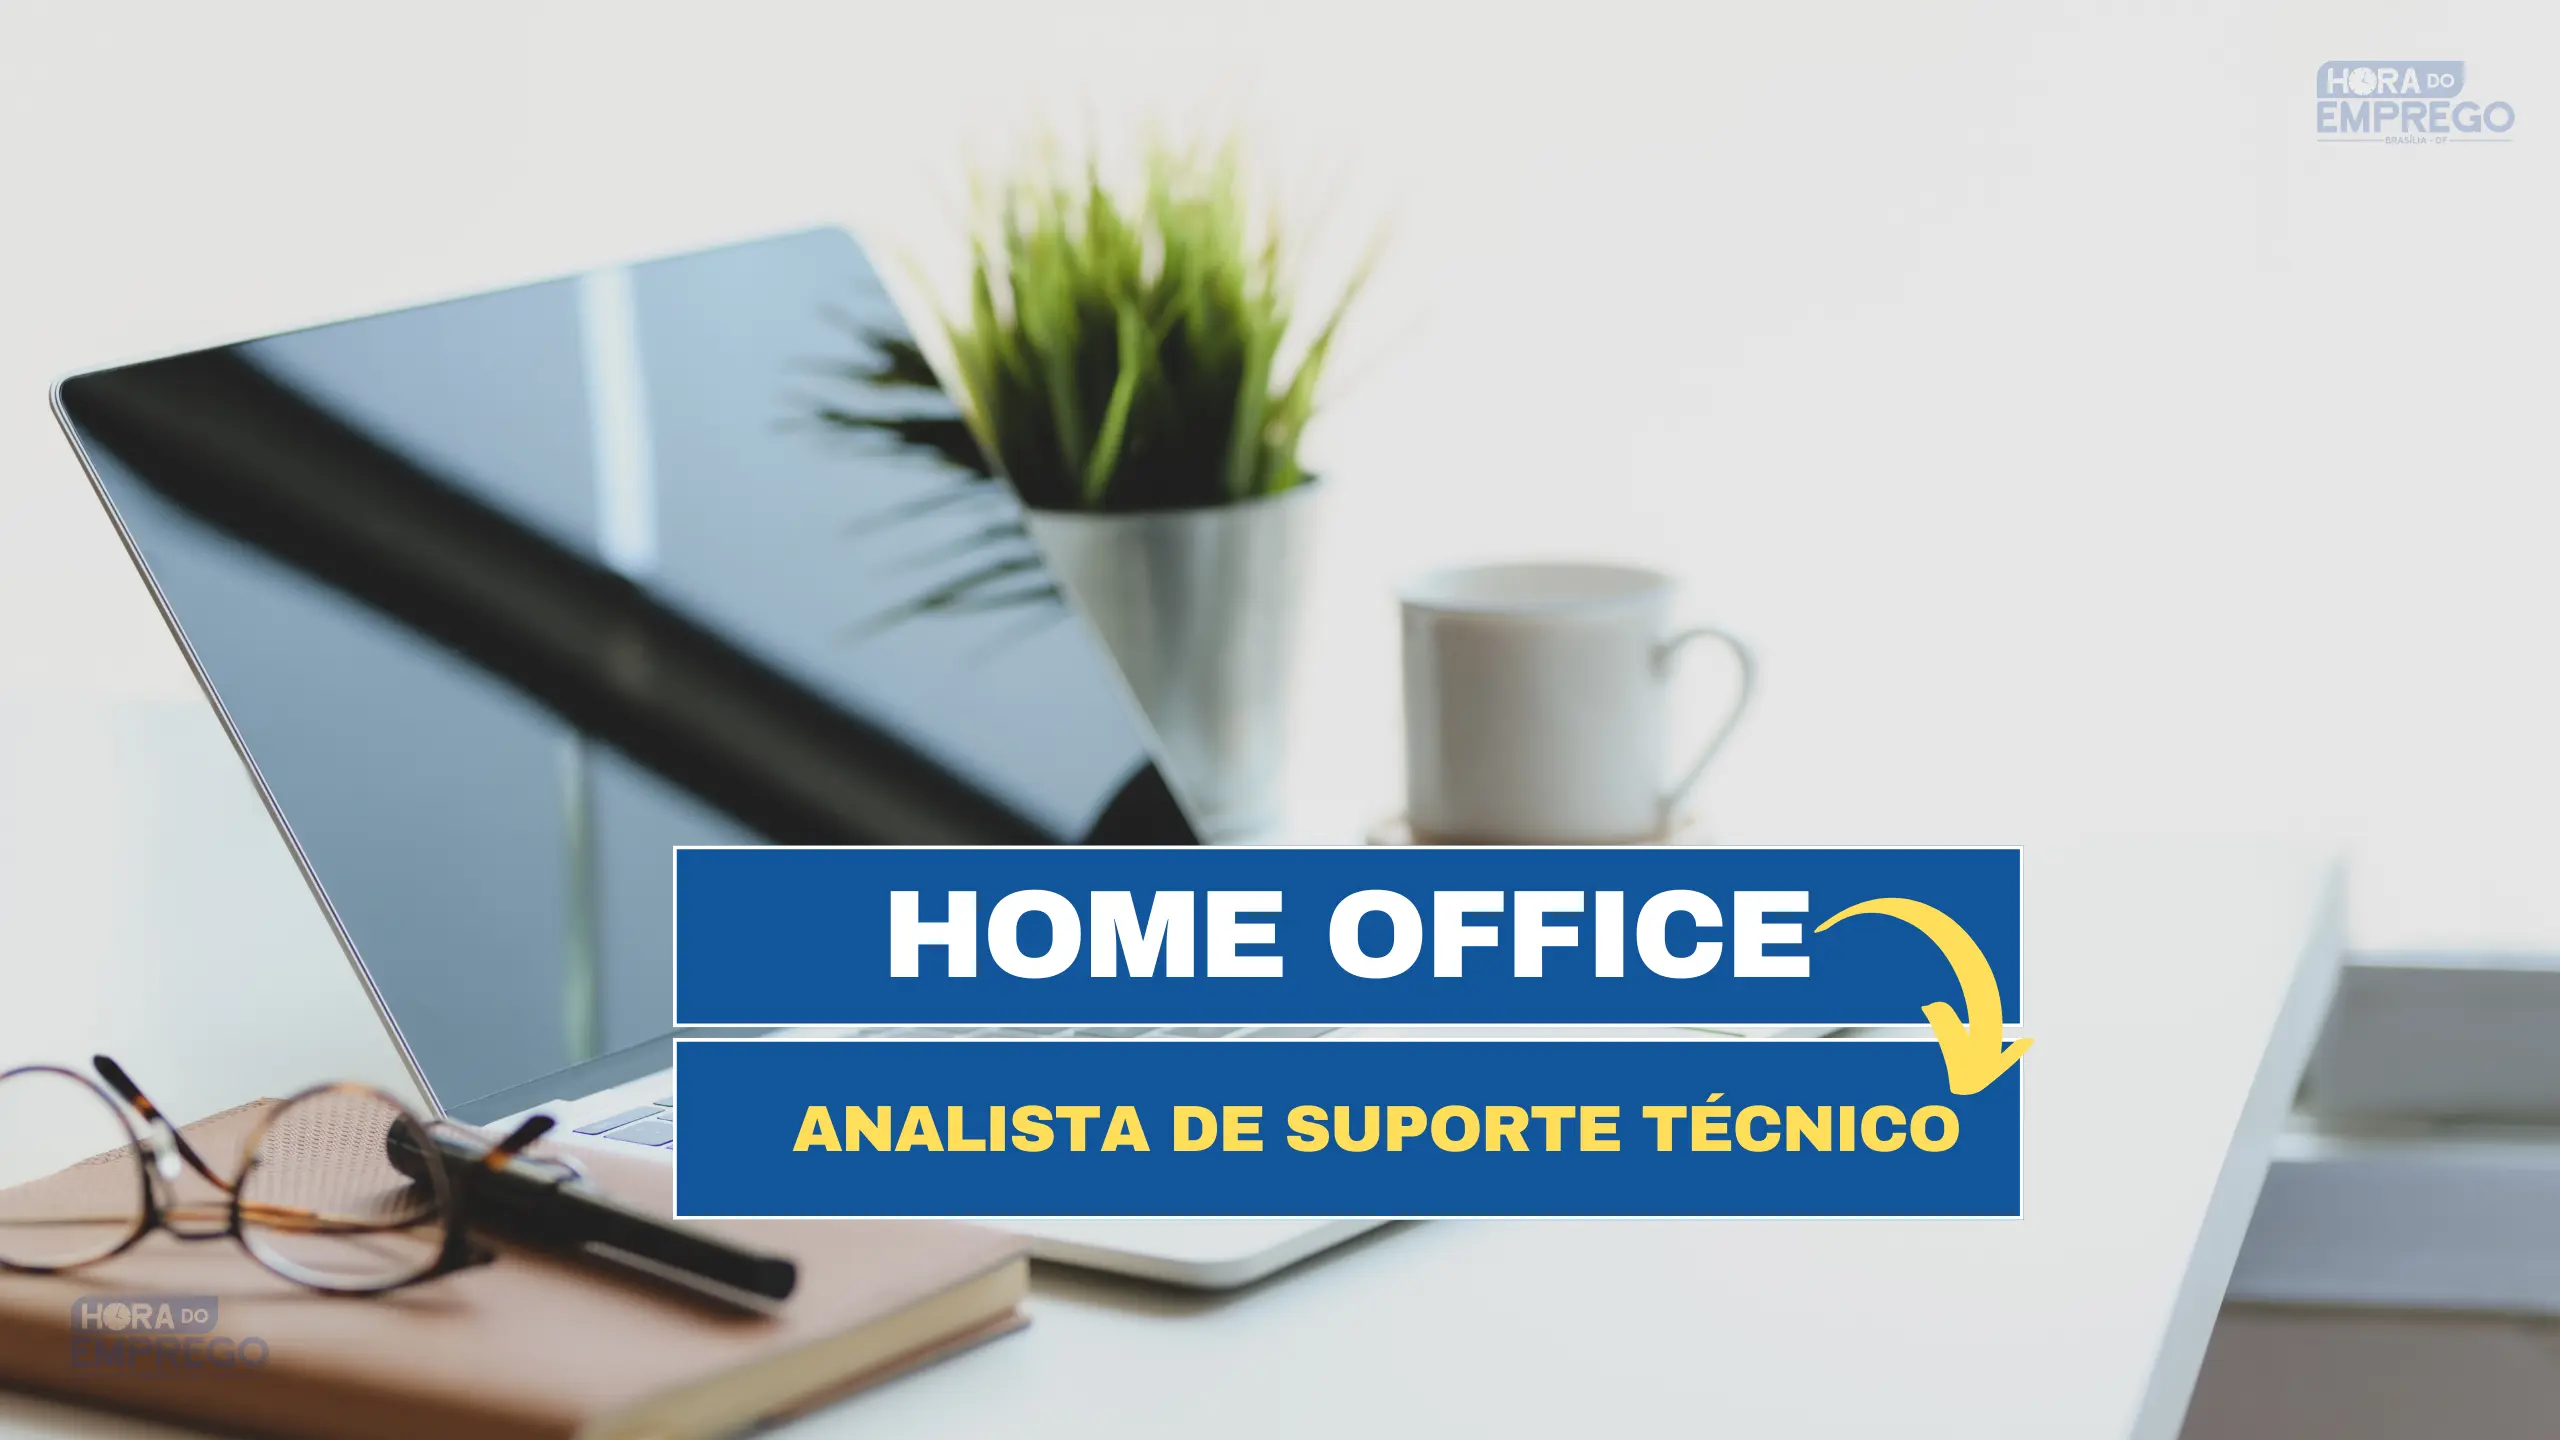 Home Office: Trabalhe de Casa no cargo de Analista de Suporte Técnico